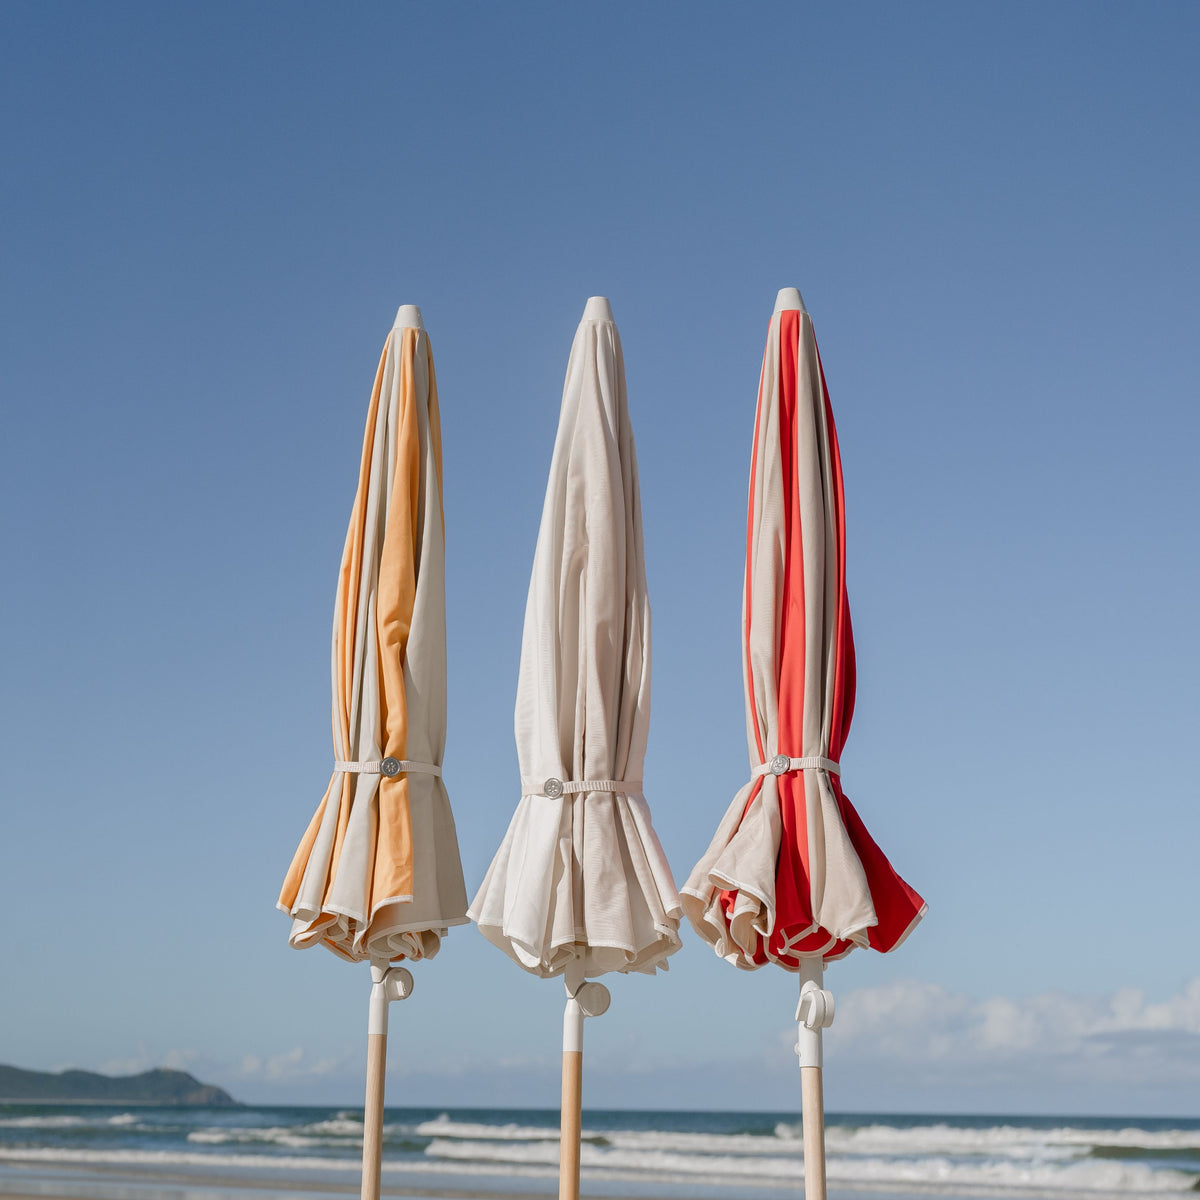 Rio Splice Travel Beach Umbrella